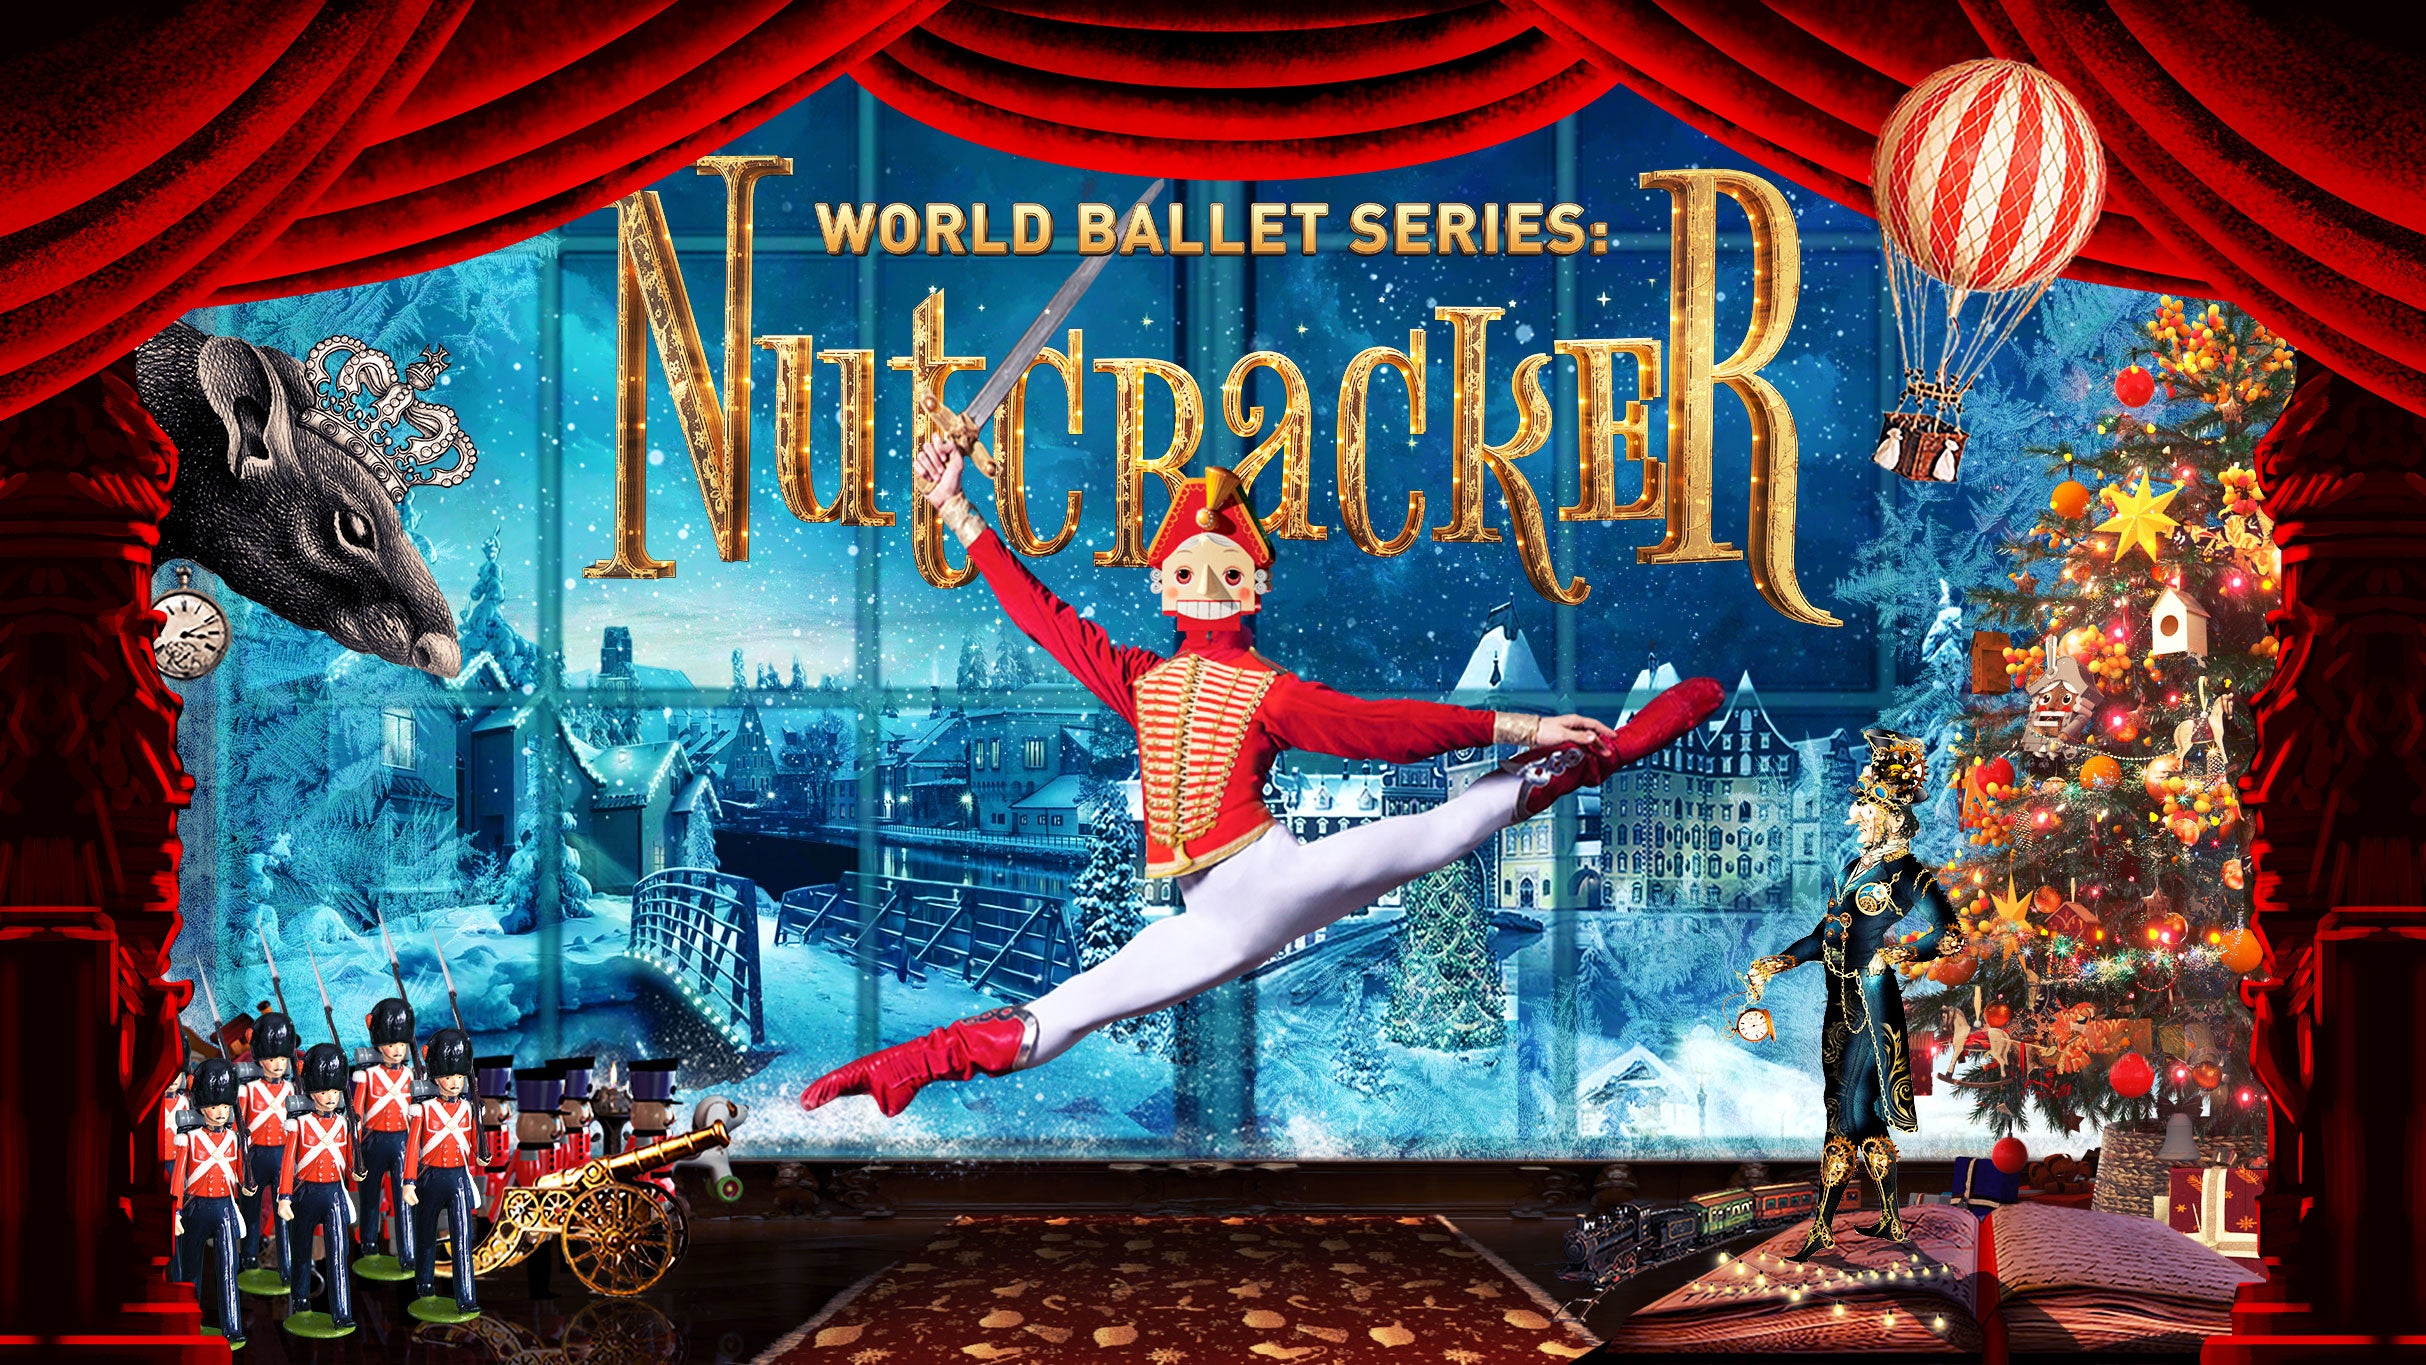 World Ballet Series: Nutcracker at Five Flags Center